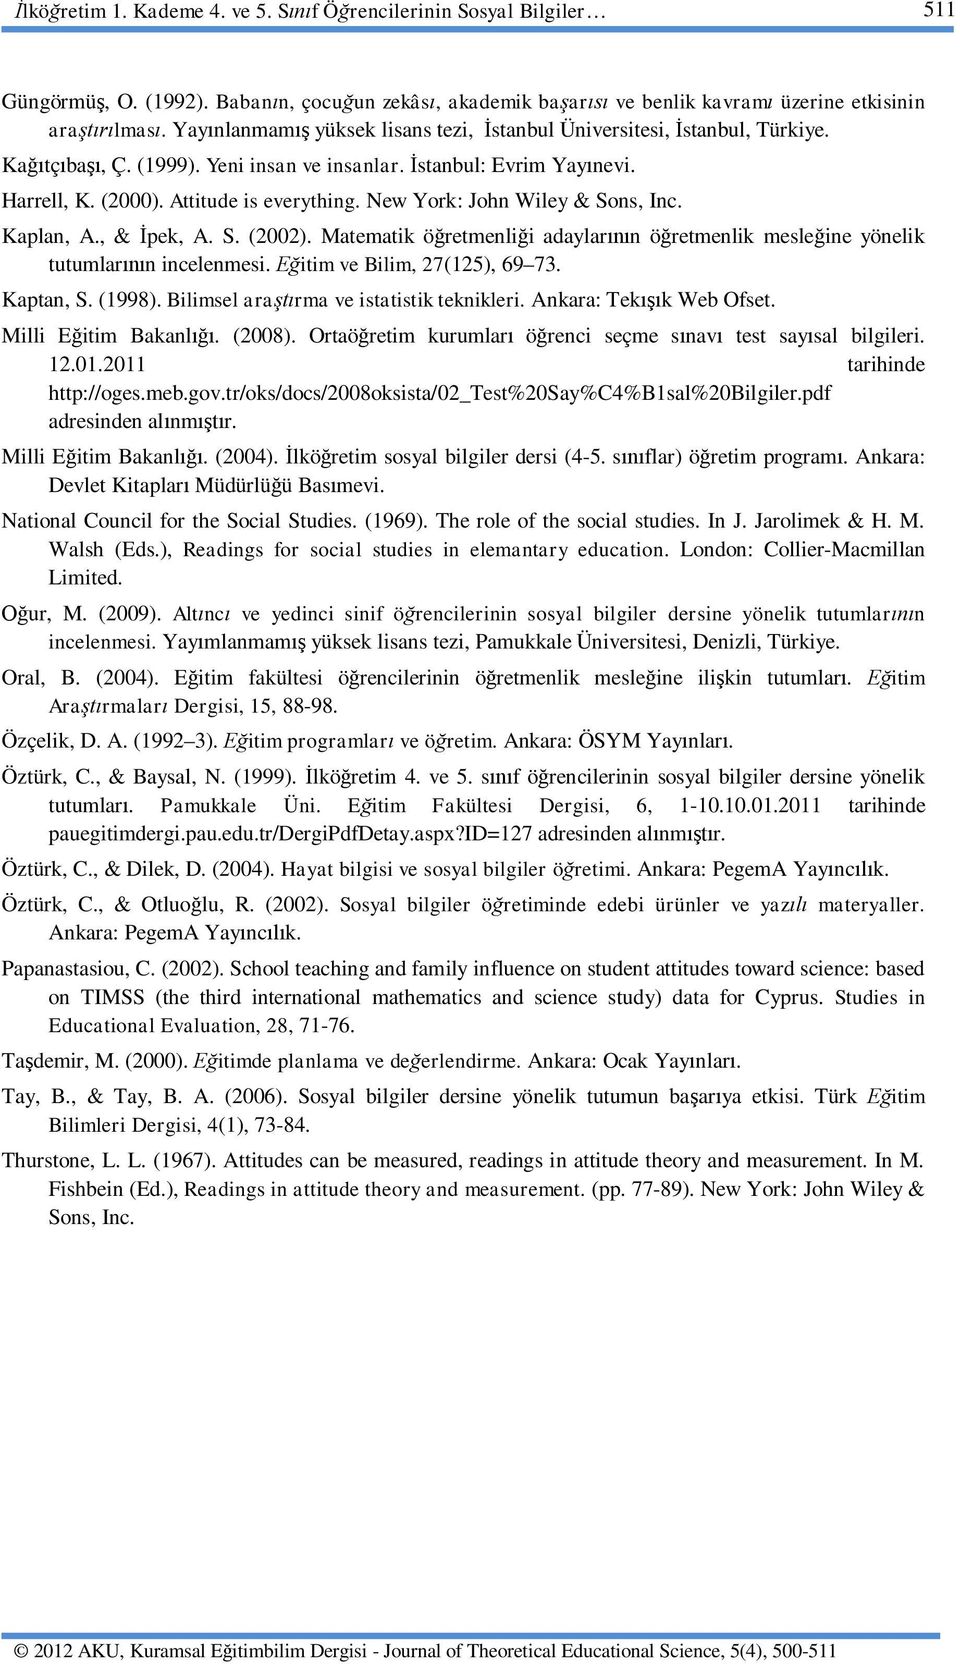 New York: John Wiley & Sons, Inc. Kaplan, A., & pek, A. S. (2002). Matematik ö retmenli i adaylar n ö retmenlik mesle ine yönelik tutumlar n incelenmesi. itim ve Bilim, 27(125), 69 73. Kaptan, S.